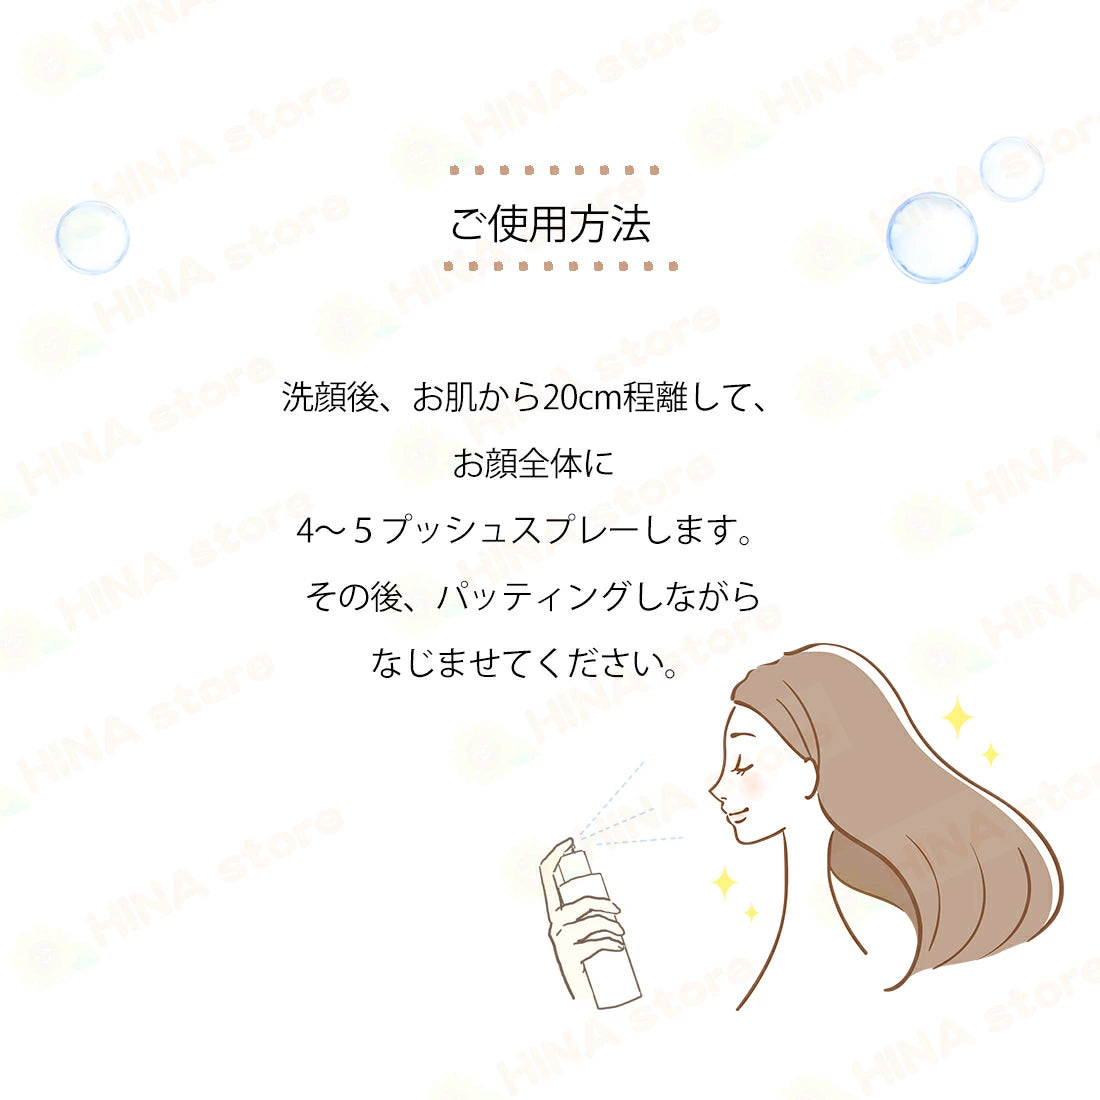 銀座まるかん 大セレブローション(化粧水)